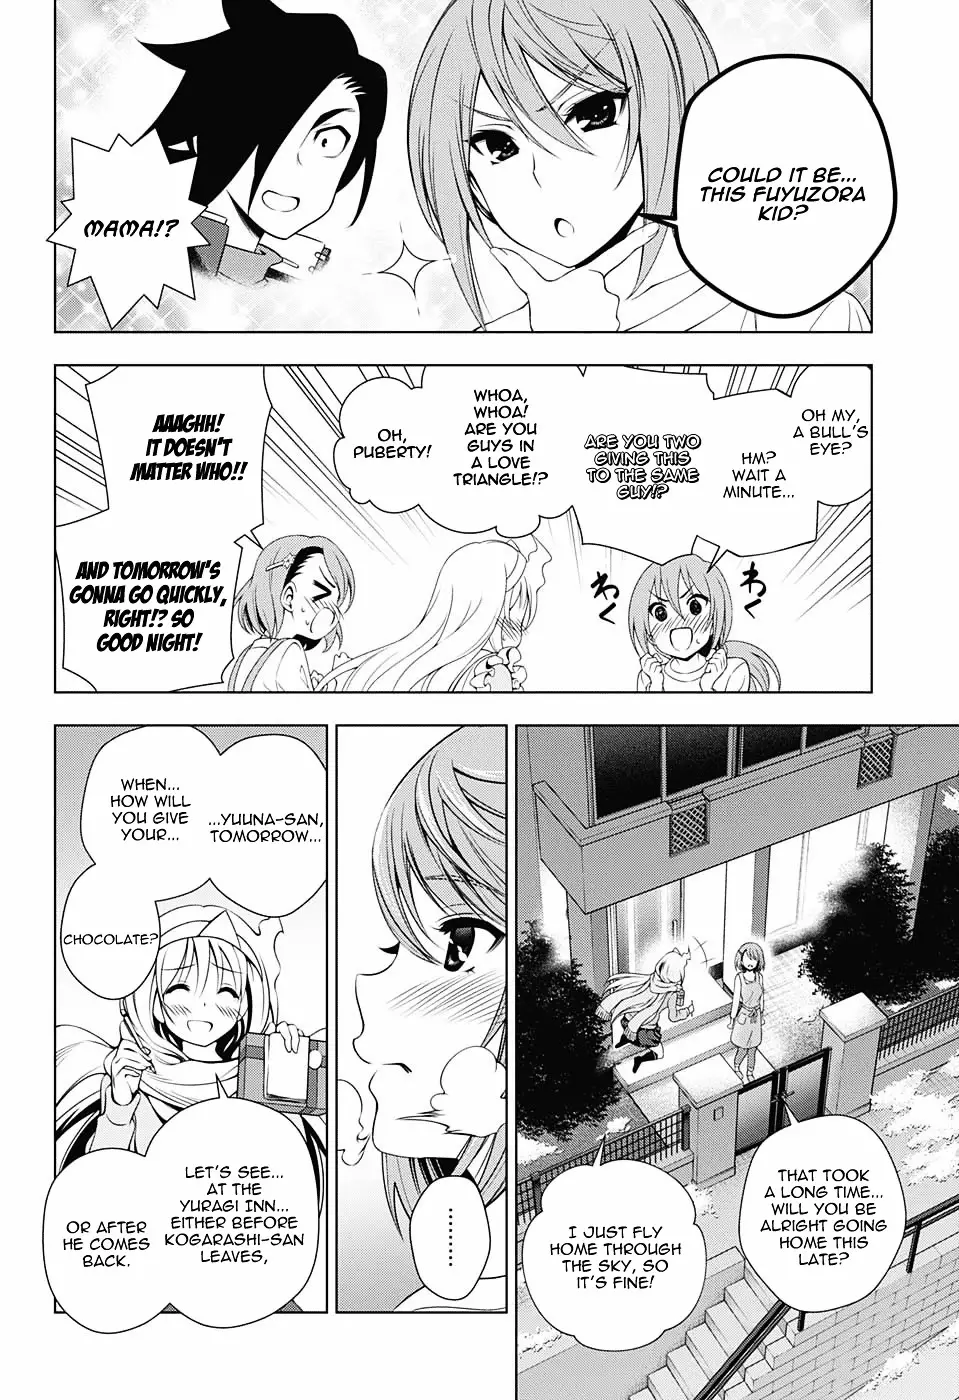 Yuragi-sou no Yuuna-san - 68 page 6-2fef0dd5